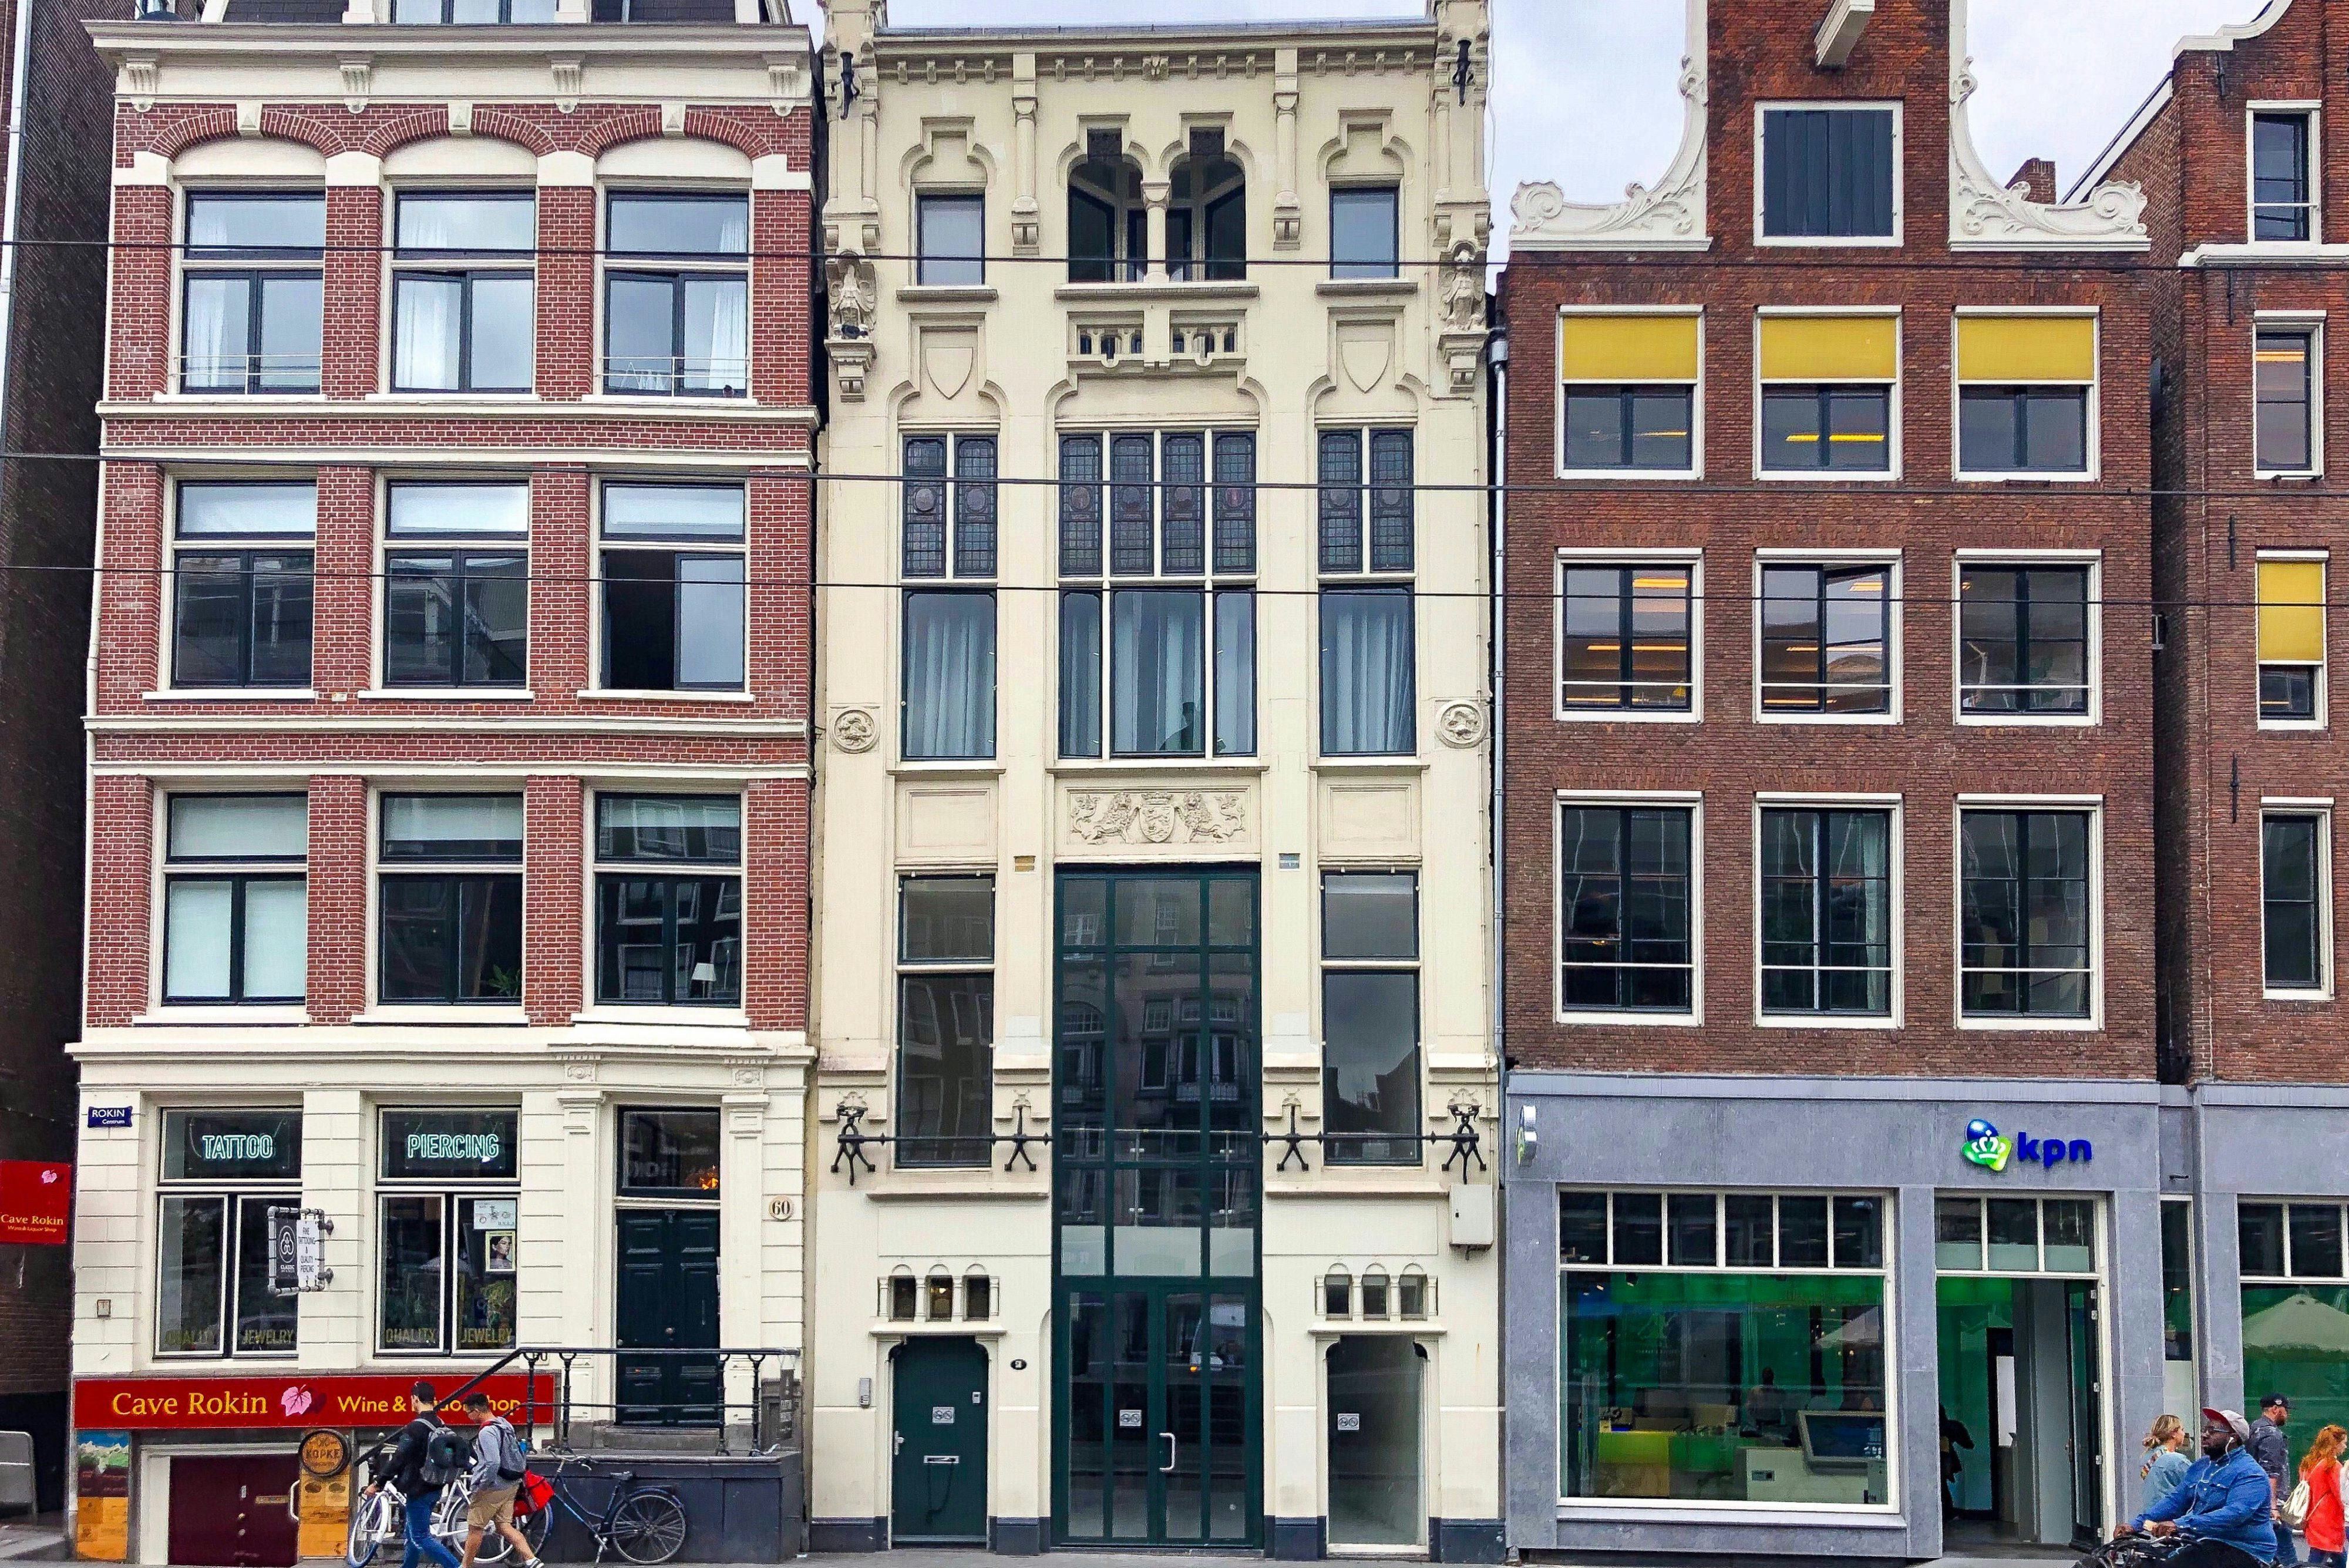 Productpine huurt winkel aan Rokin in Amsterdam